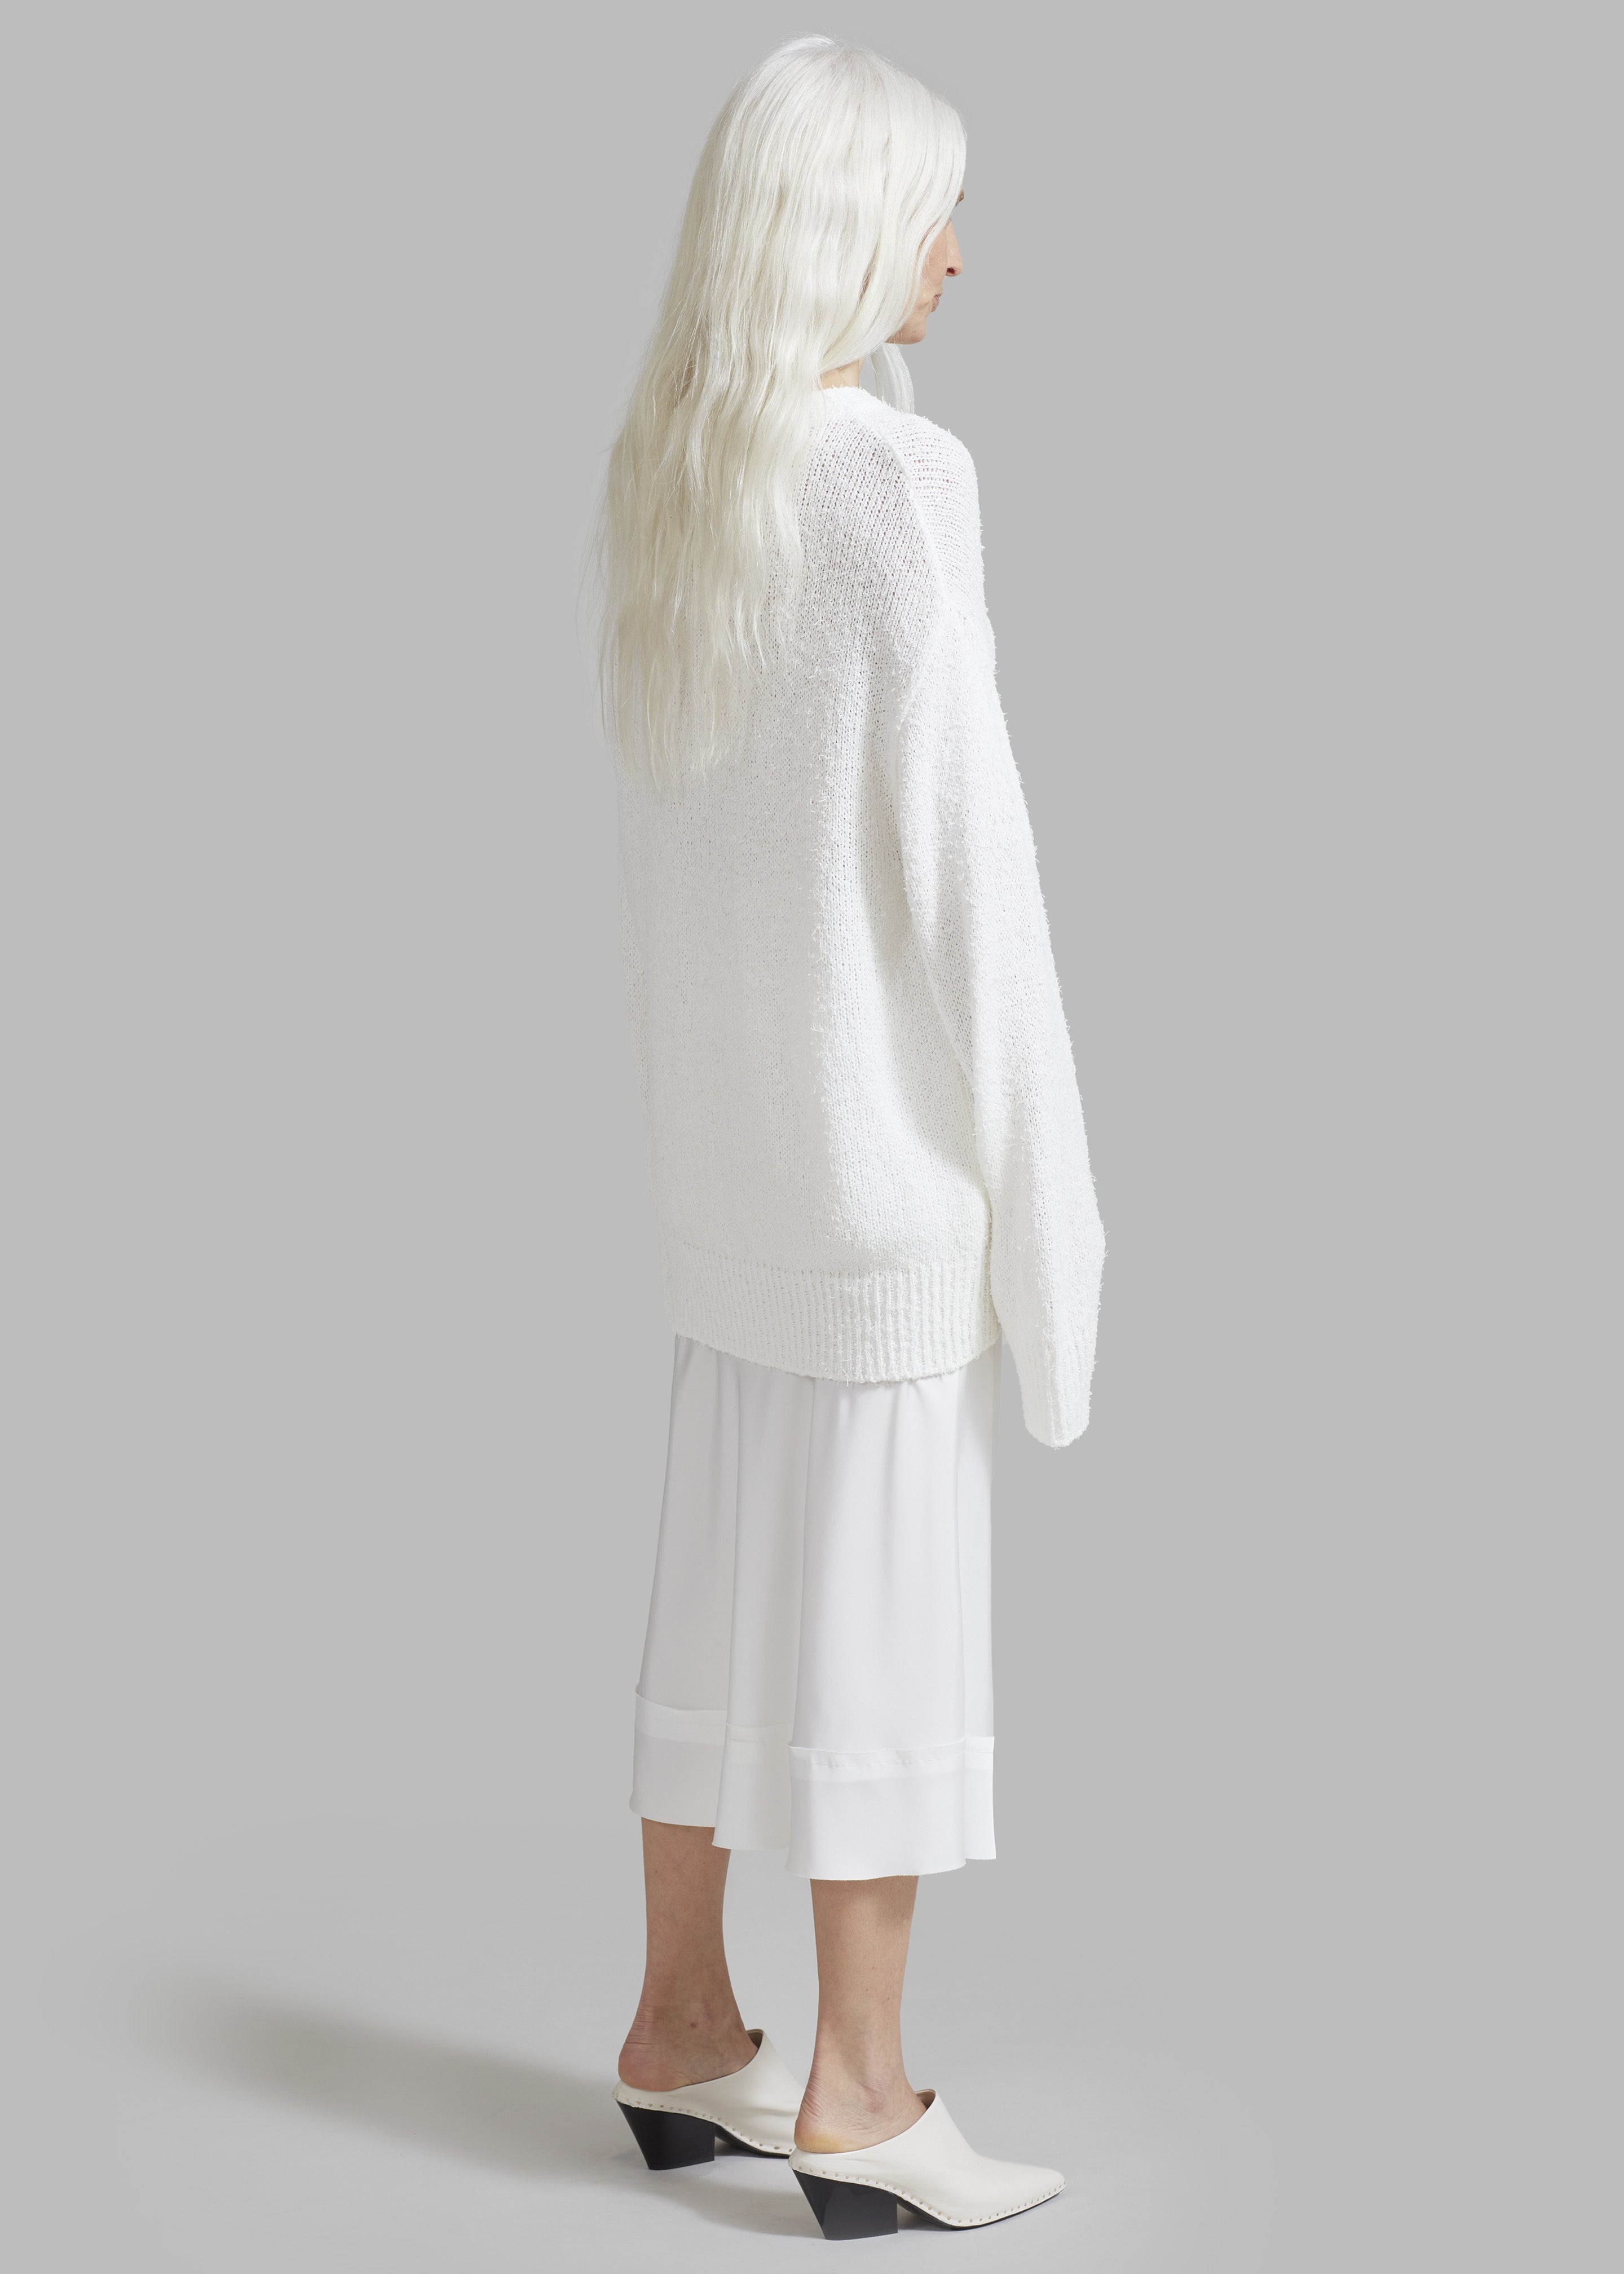 Vosgi Silky Skirt - White - 10